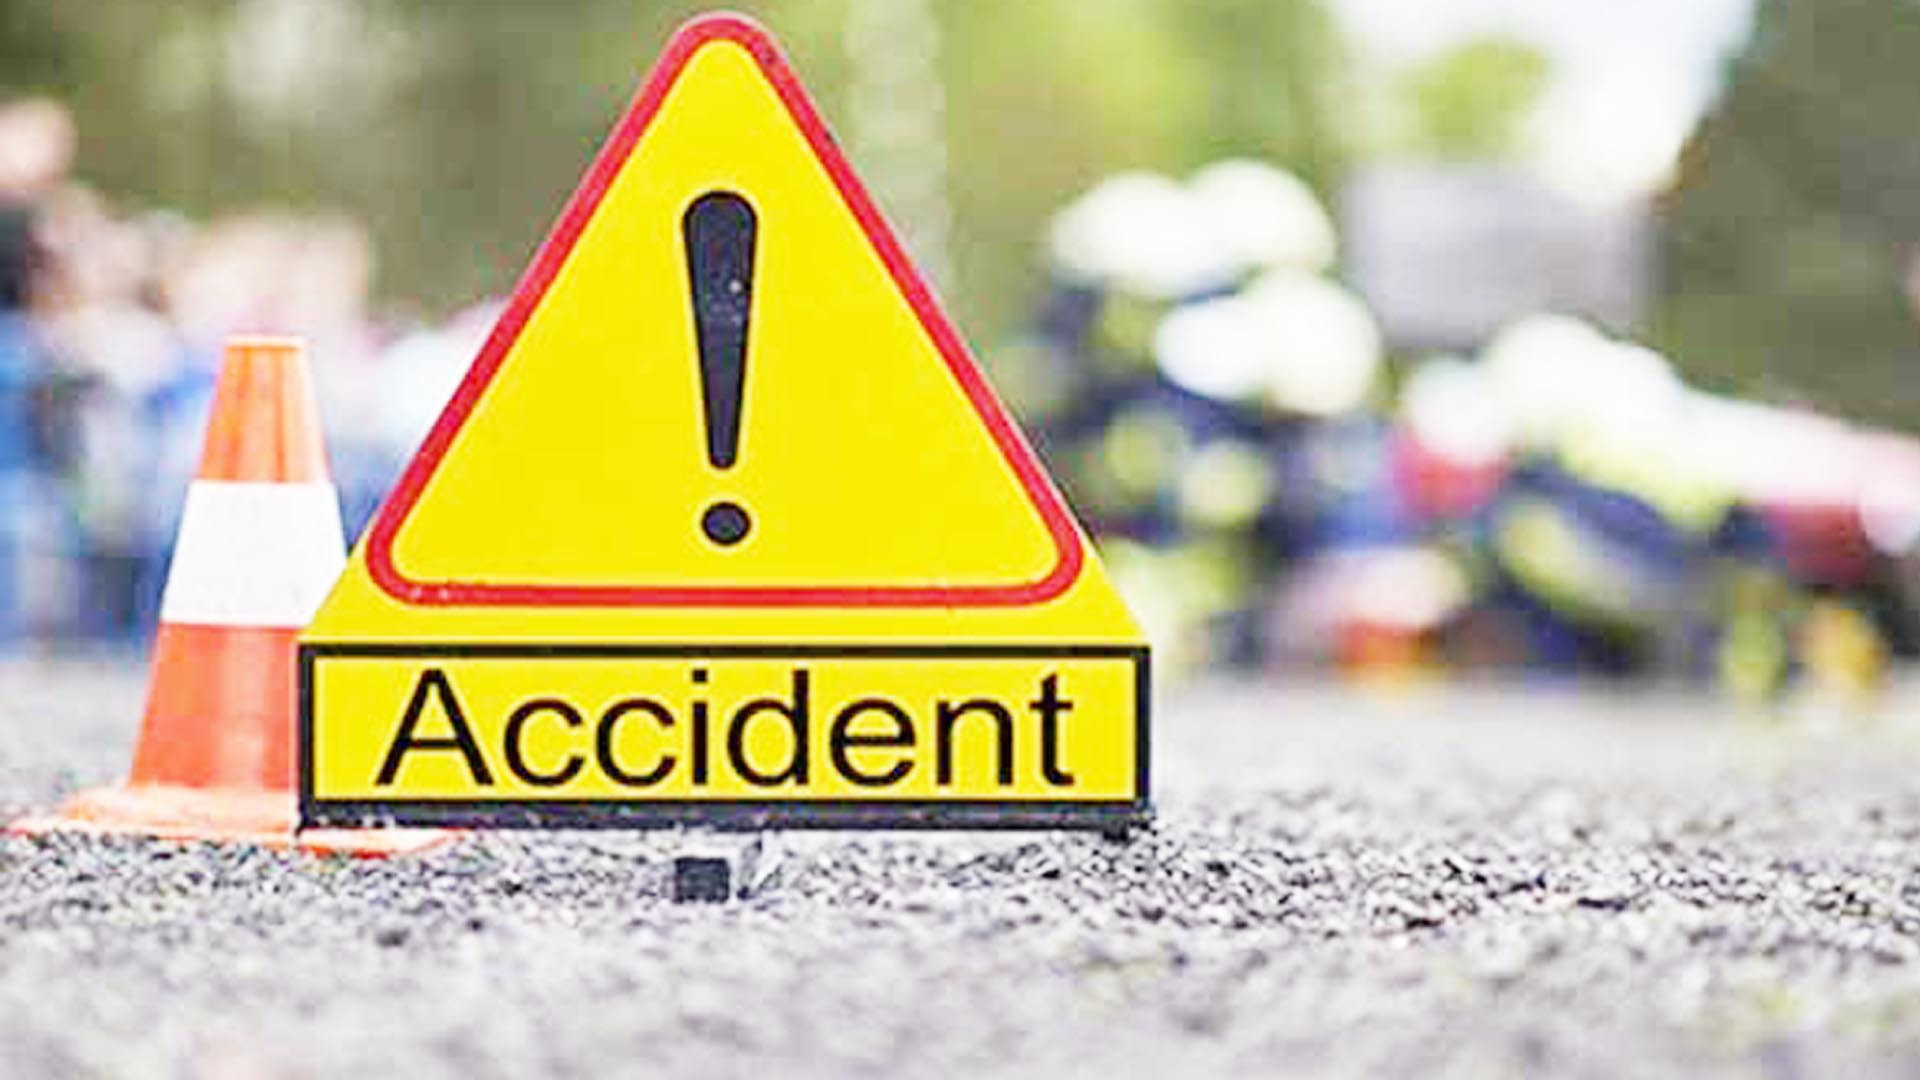 बैतडीमा जिप दुर्घटना हुँदा चालकको मृत्यु, ६ जना घाइते